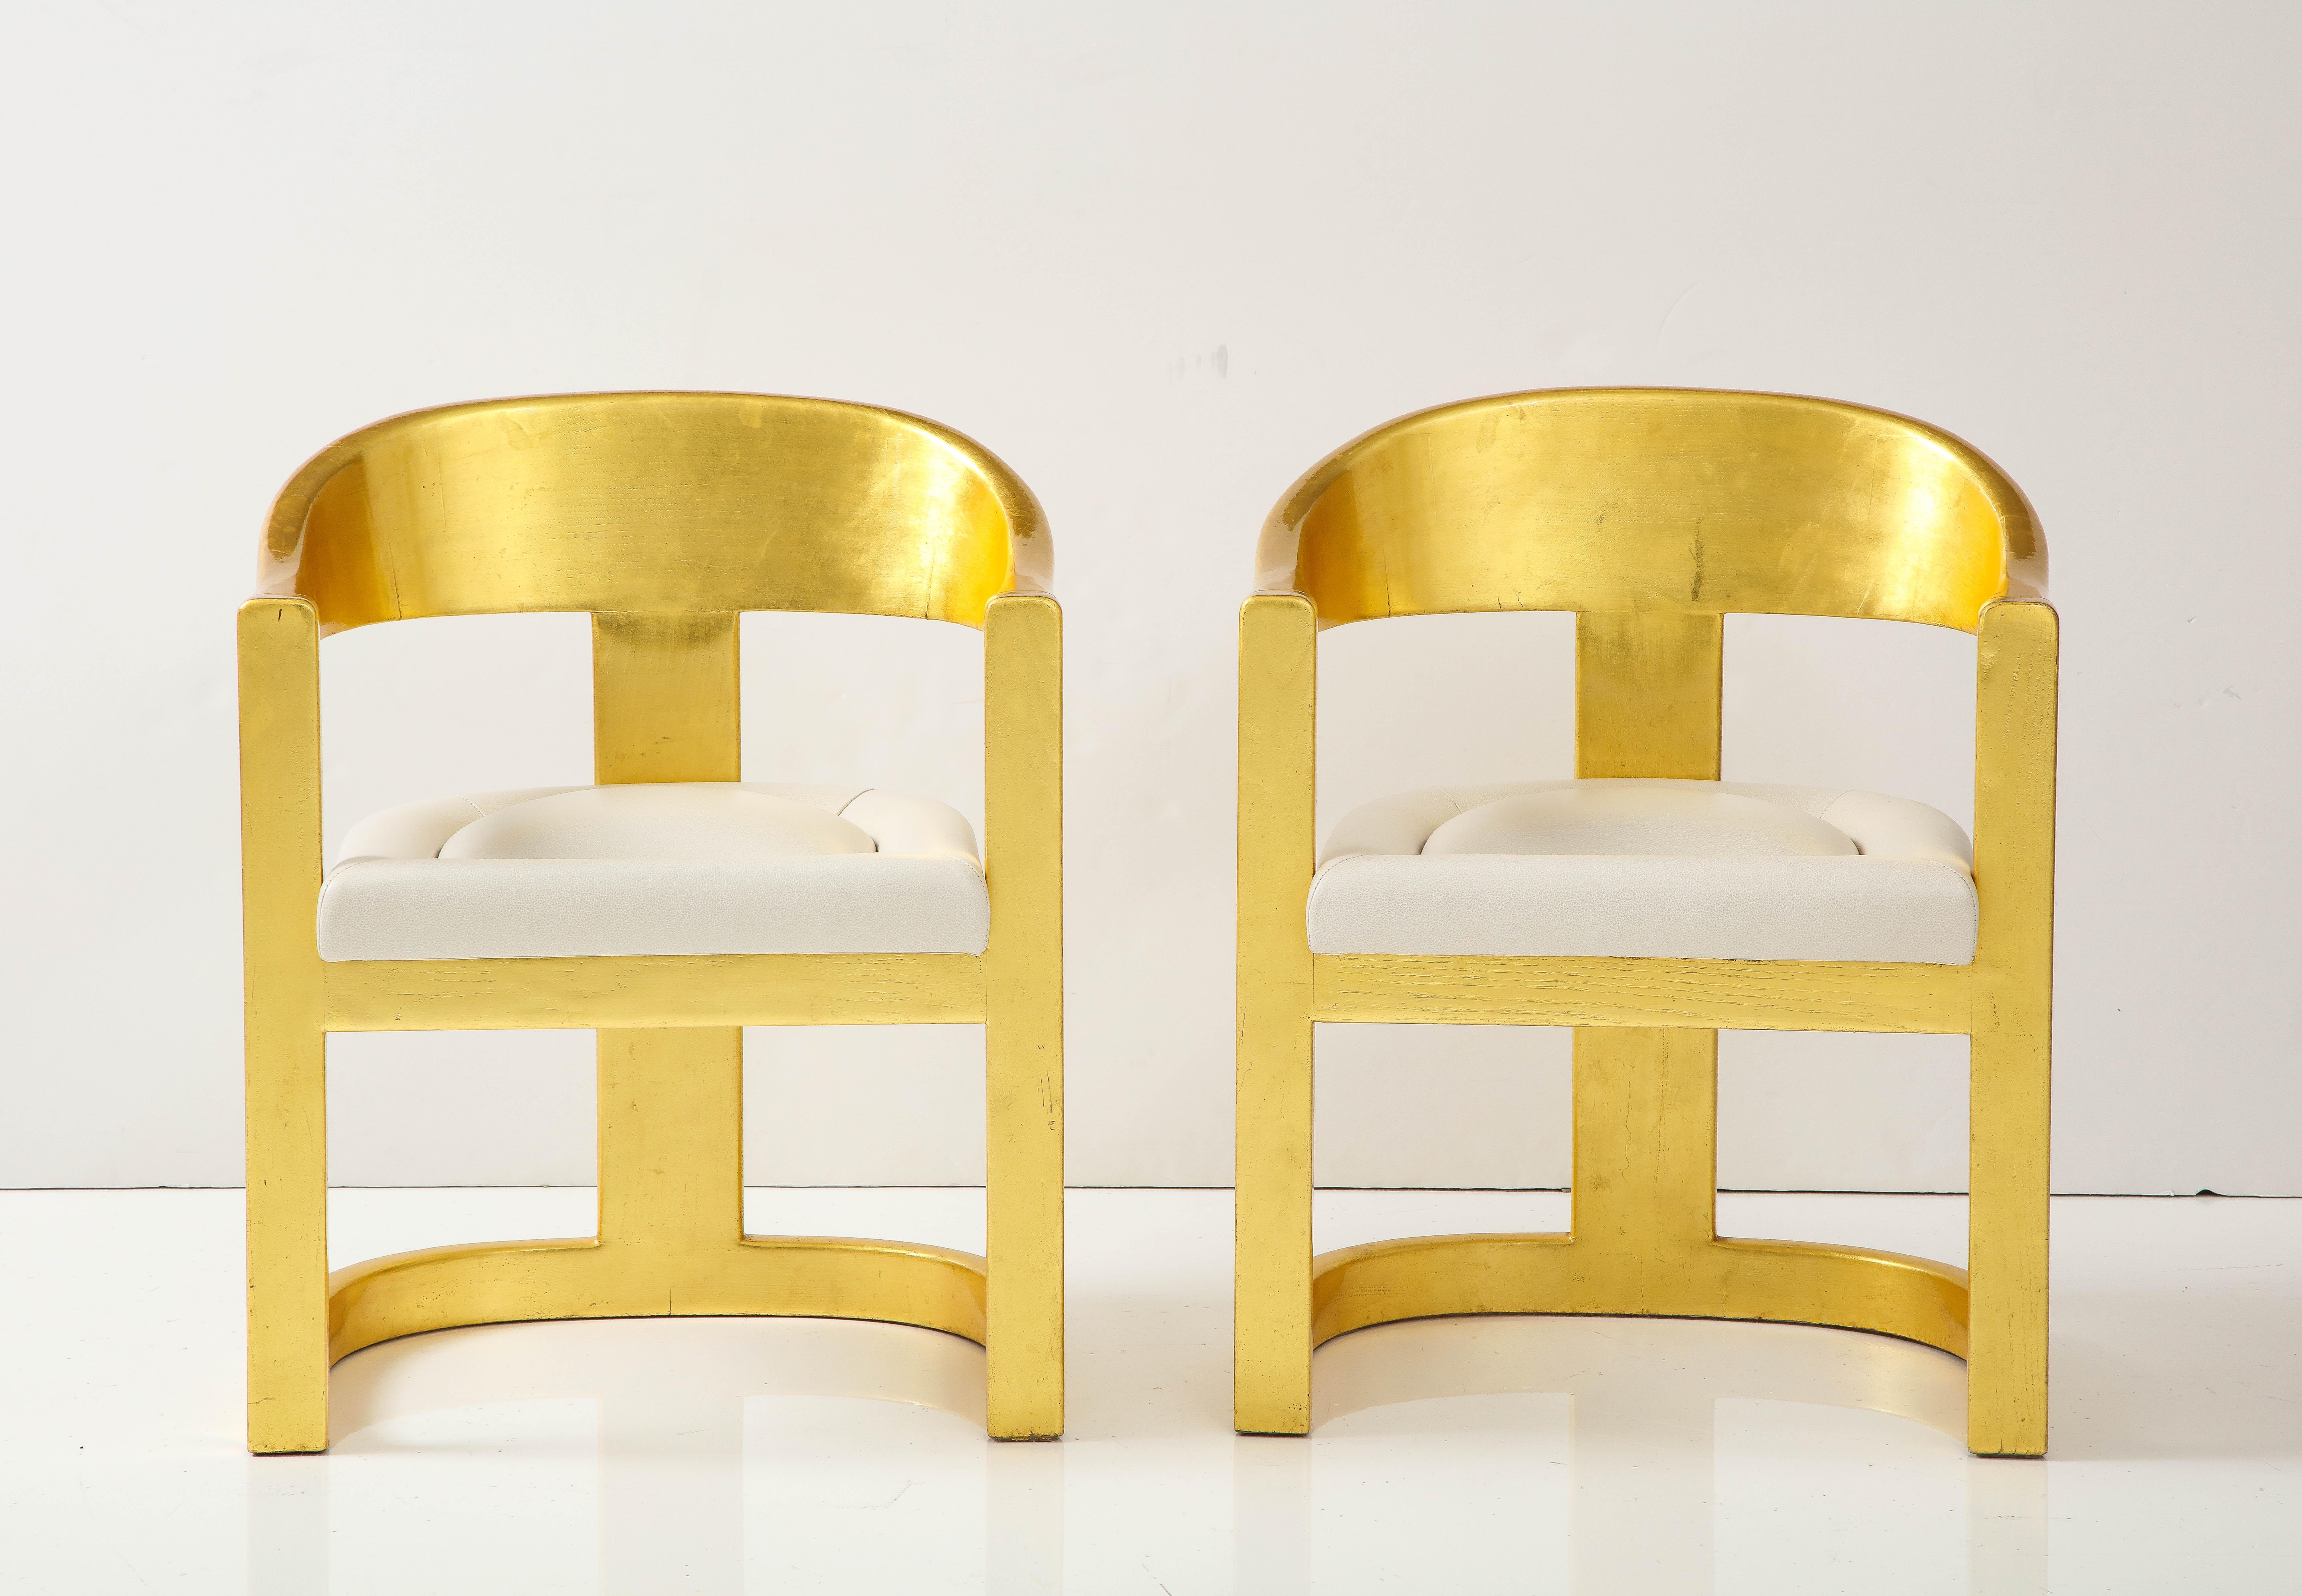 Satz von 6 Karl Springer Onassis Stühlen mit Lederpolsterung.
Der ikonische Onassis-Stuhl ist einer der berühmtesten Entwürfe von Karl Springers, und die schönen Linien passen sich dem Körper an. 
den Körper perfekt. Die 6  Vintage-Stühle in Gold